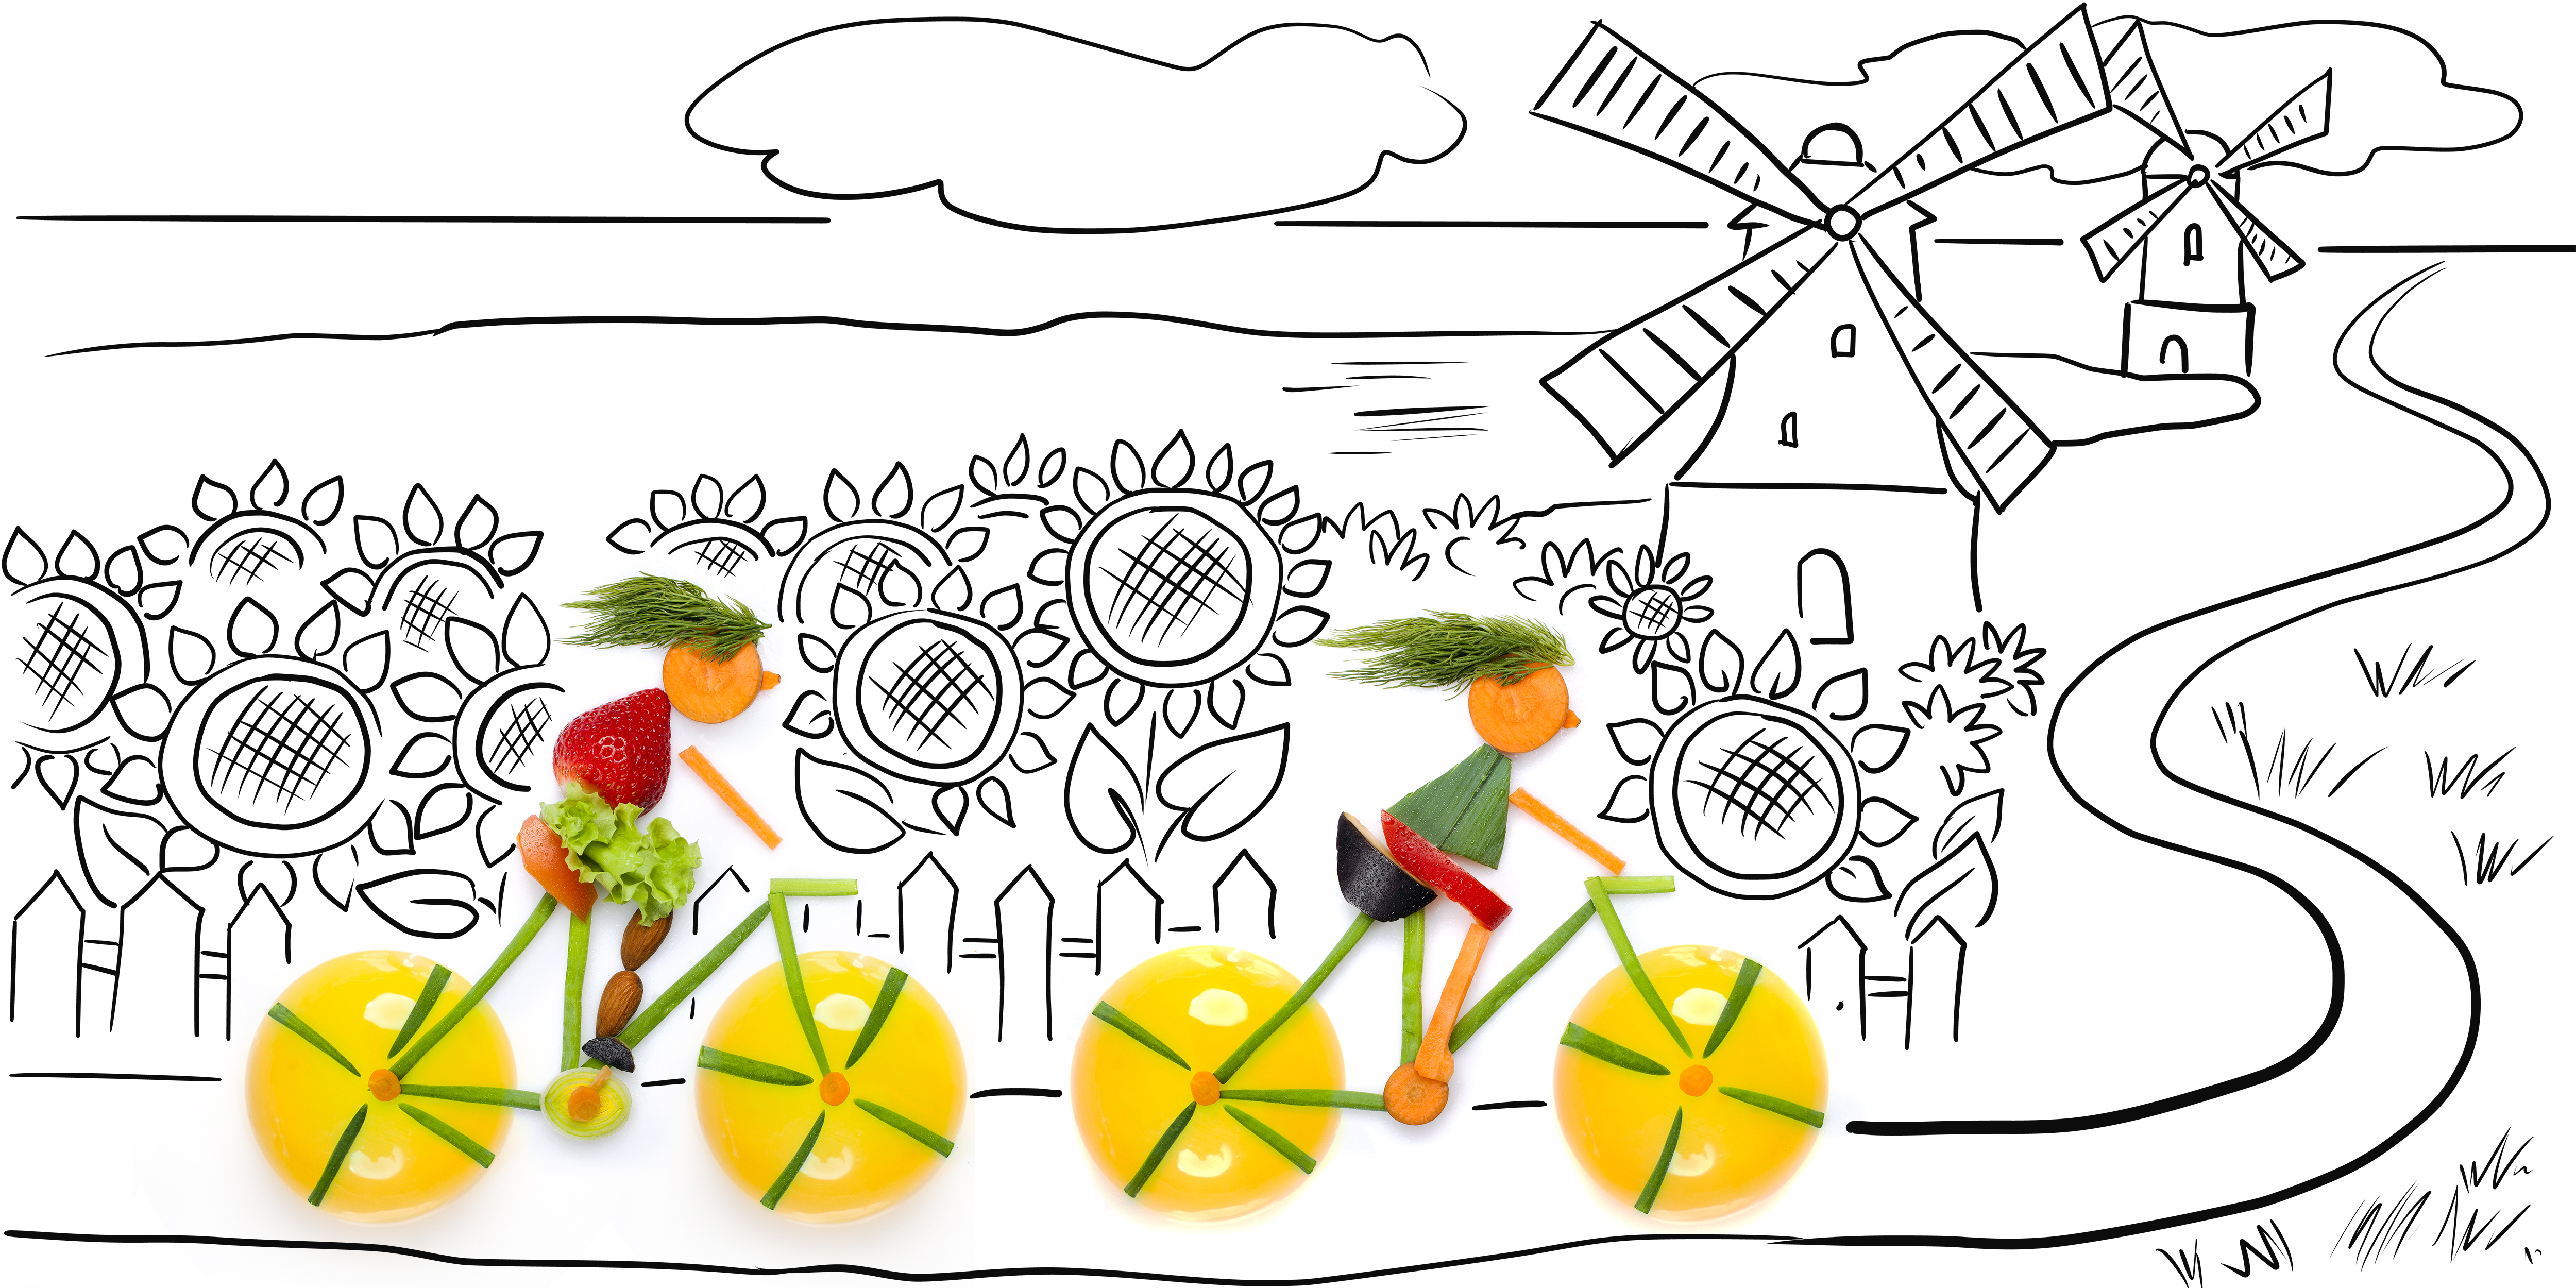 disegno di due figure in bicicletta ricreate con frutta e verdura